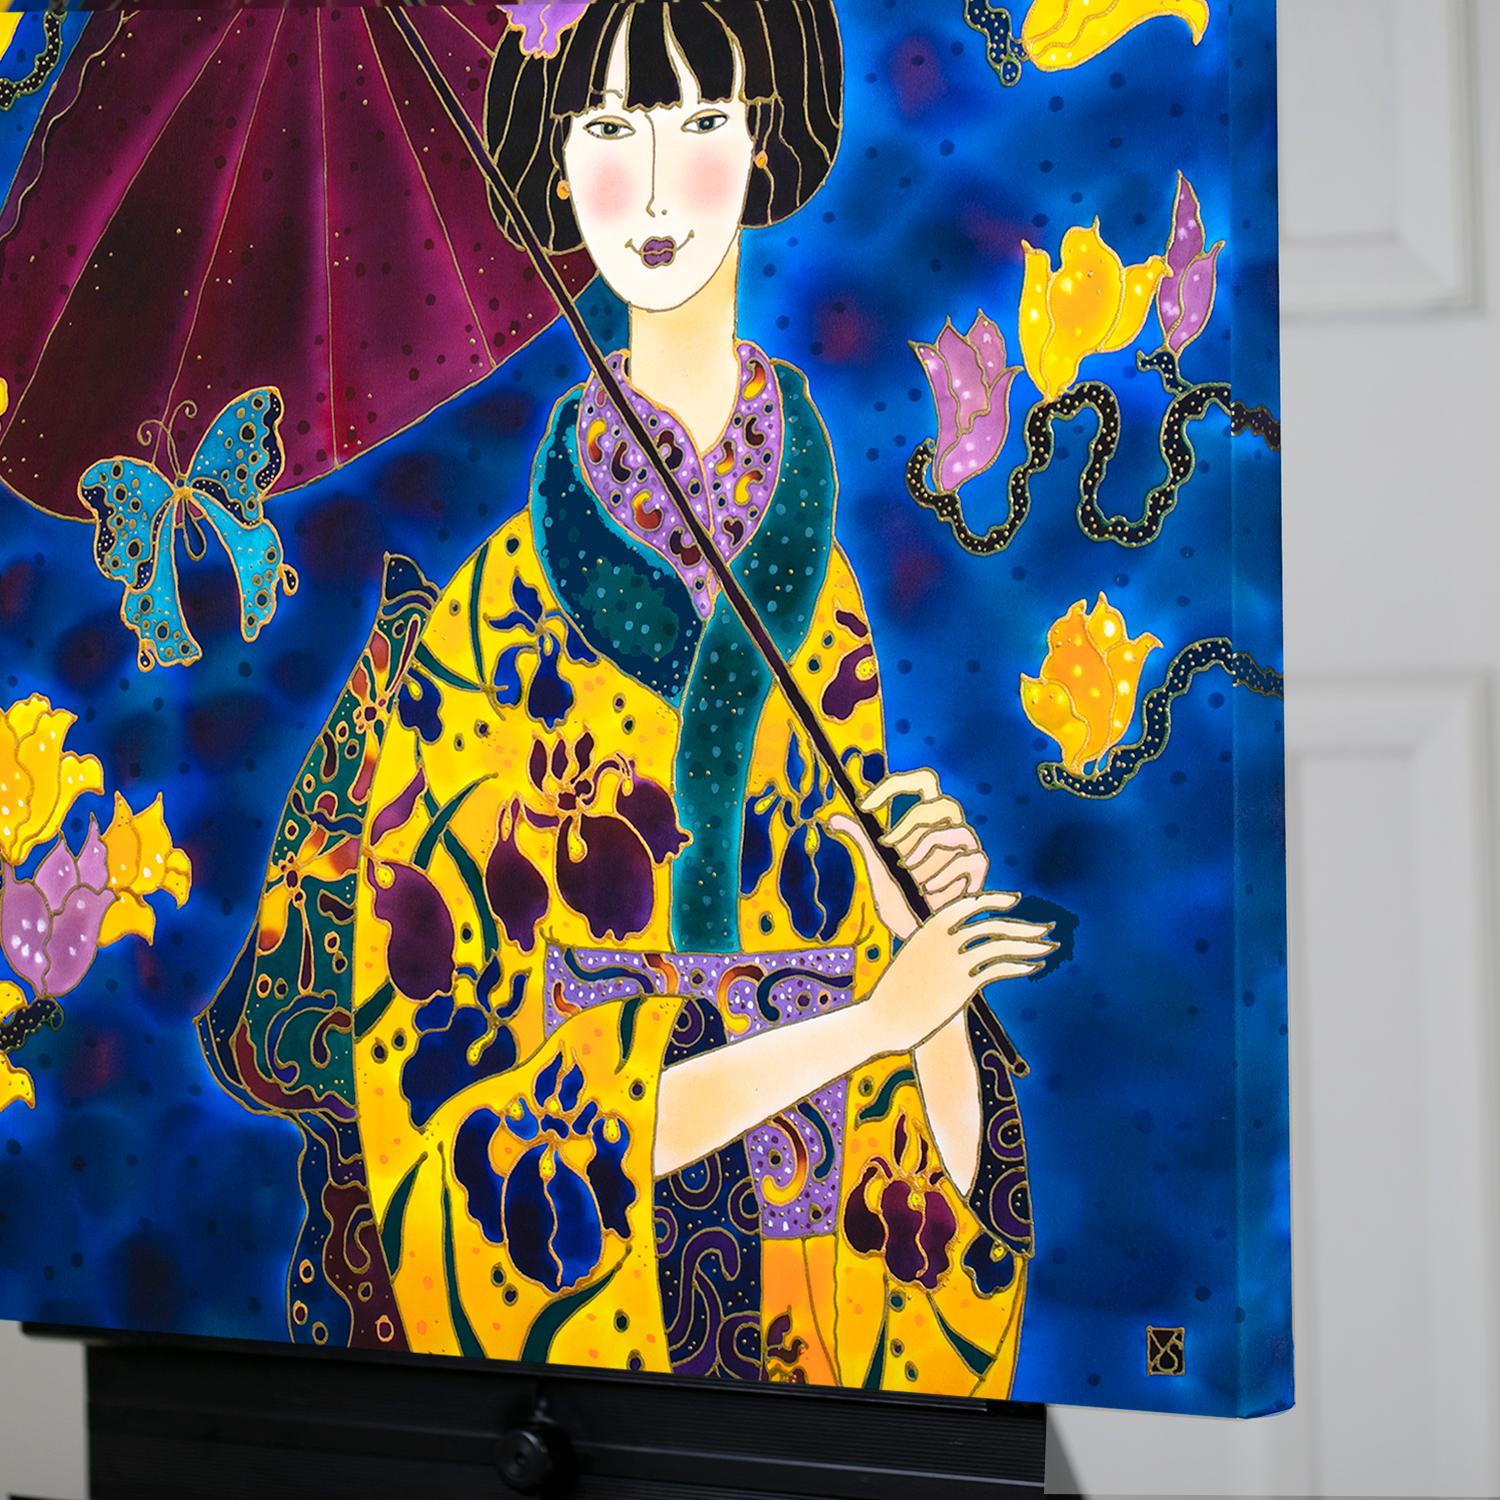 Japanese Girl in Iris Kimono, Original Painting - Contemporary Mixed Media Art by Yelena Sidorova